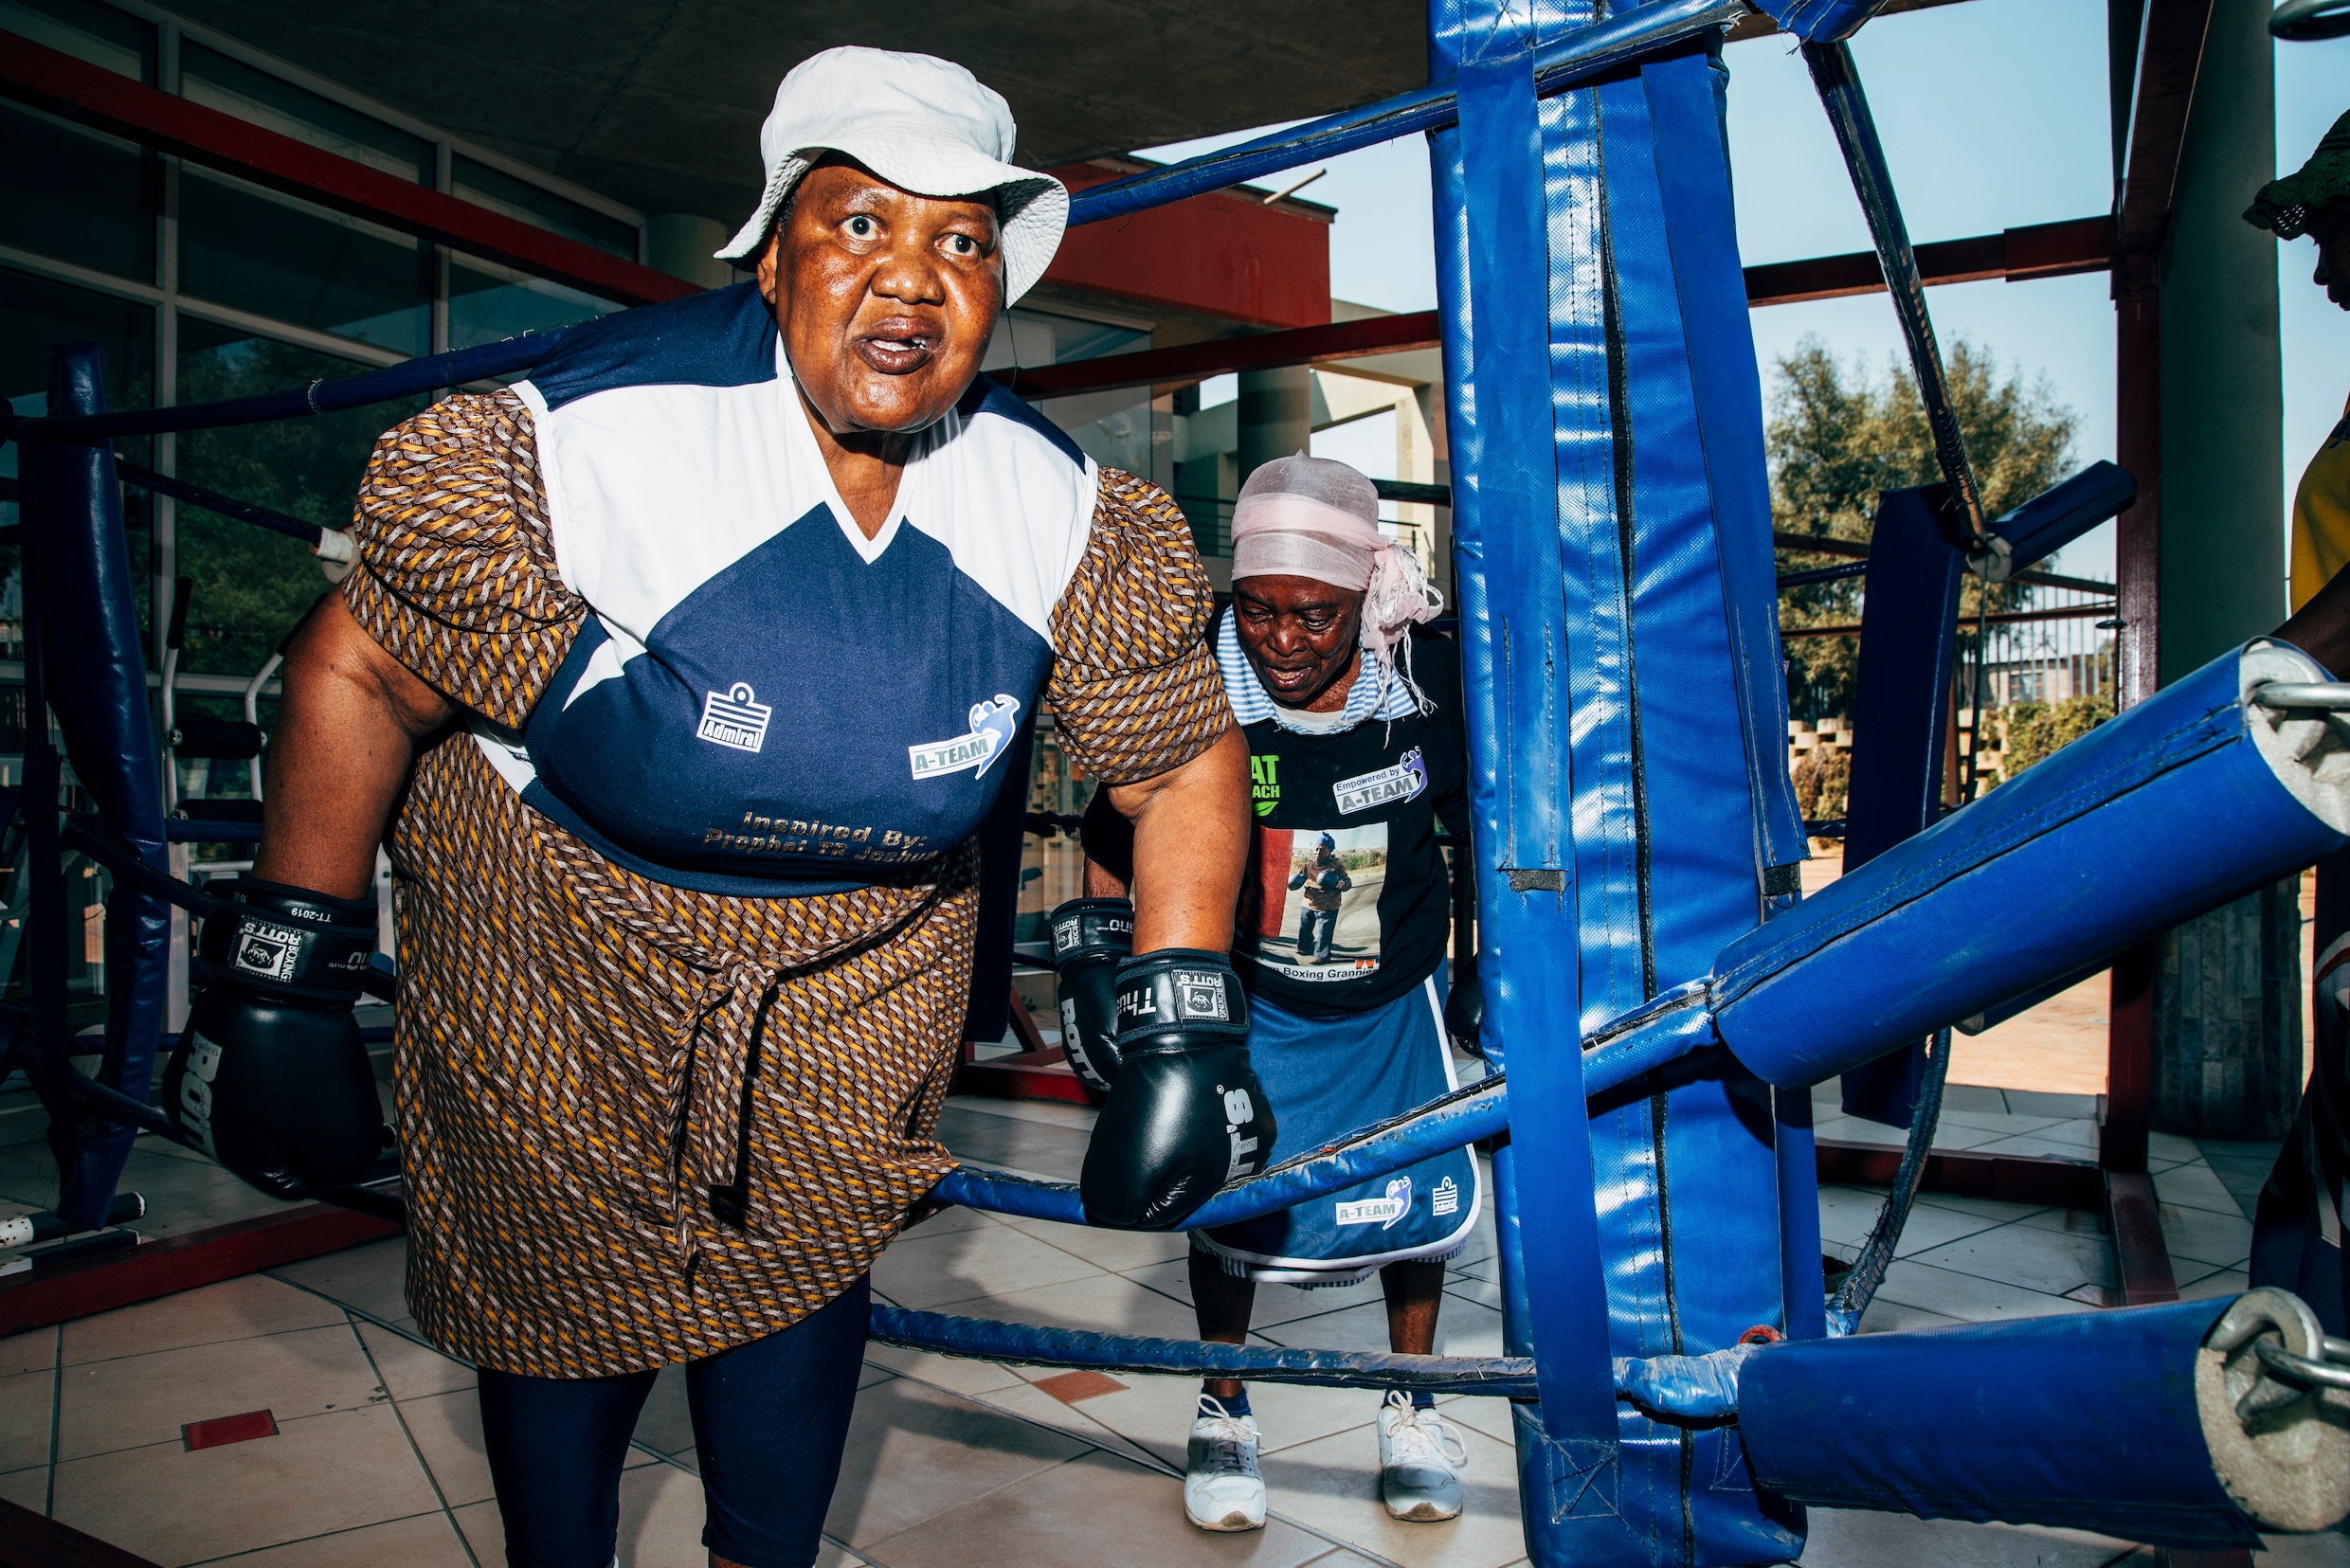 Deze Zuid-Afrikaanse oma’s staan hun mannetje in de boksring